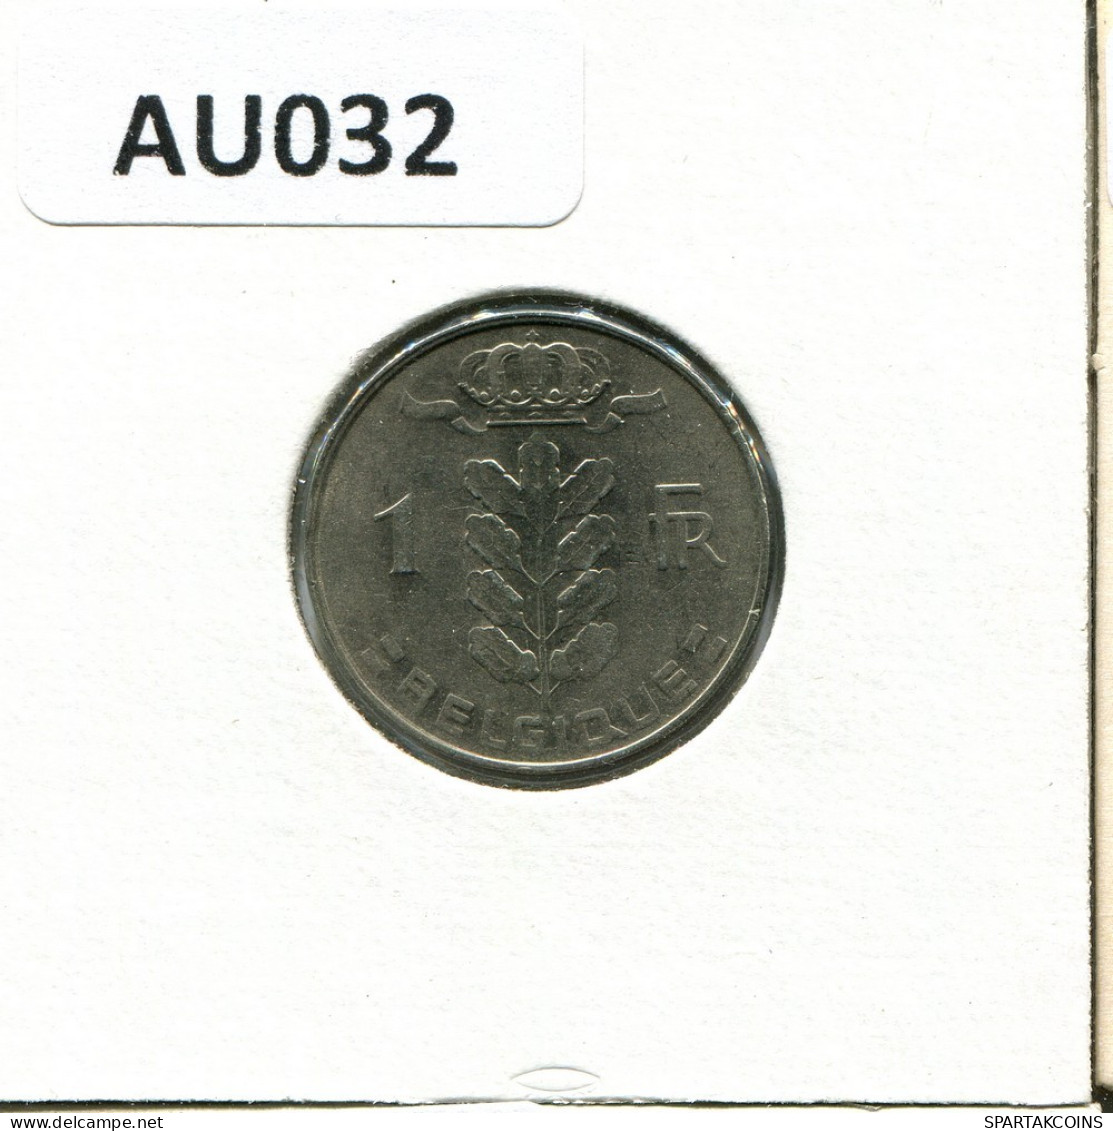 1 FRANC 1972 FRENCH Text BÉLGICA BELGIUM Moneda #AU032.E.A - 1 Franc